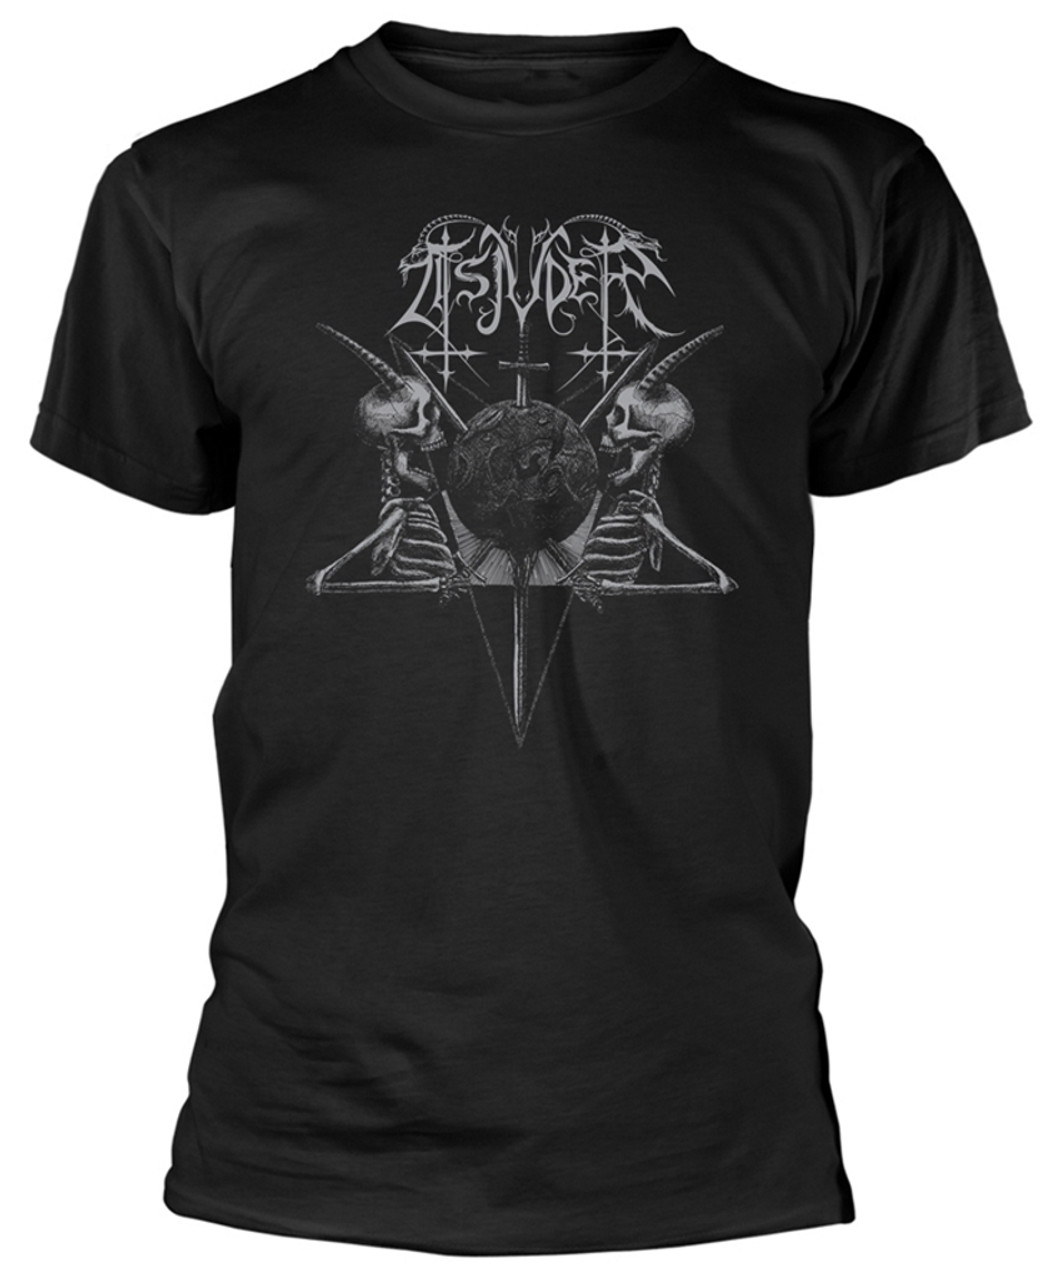 Tsjuder 'Demonic Supremacy' T-Shirt